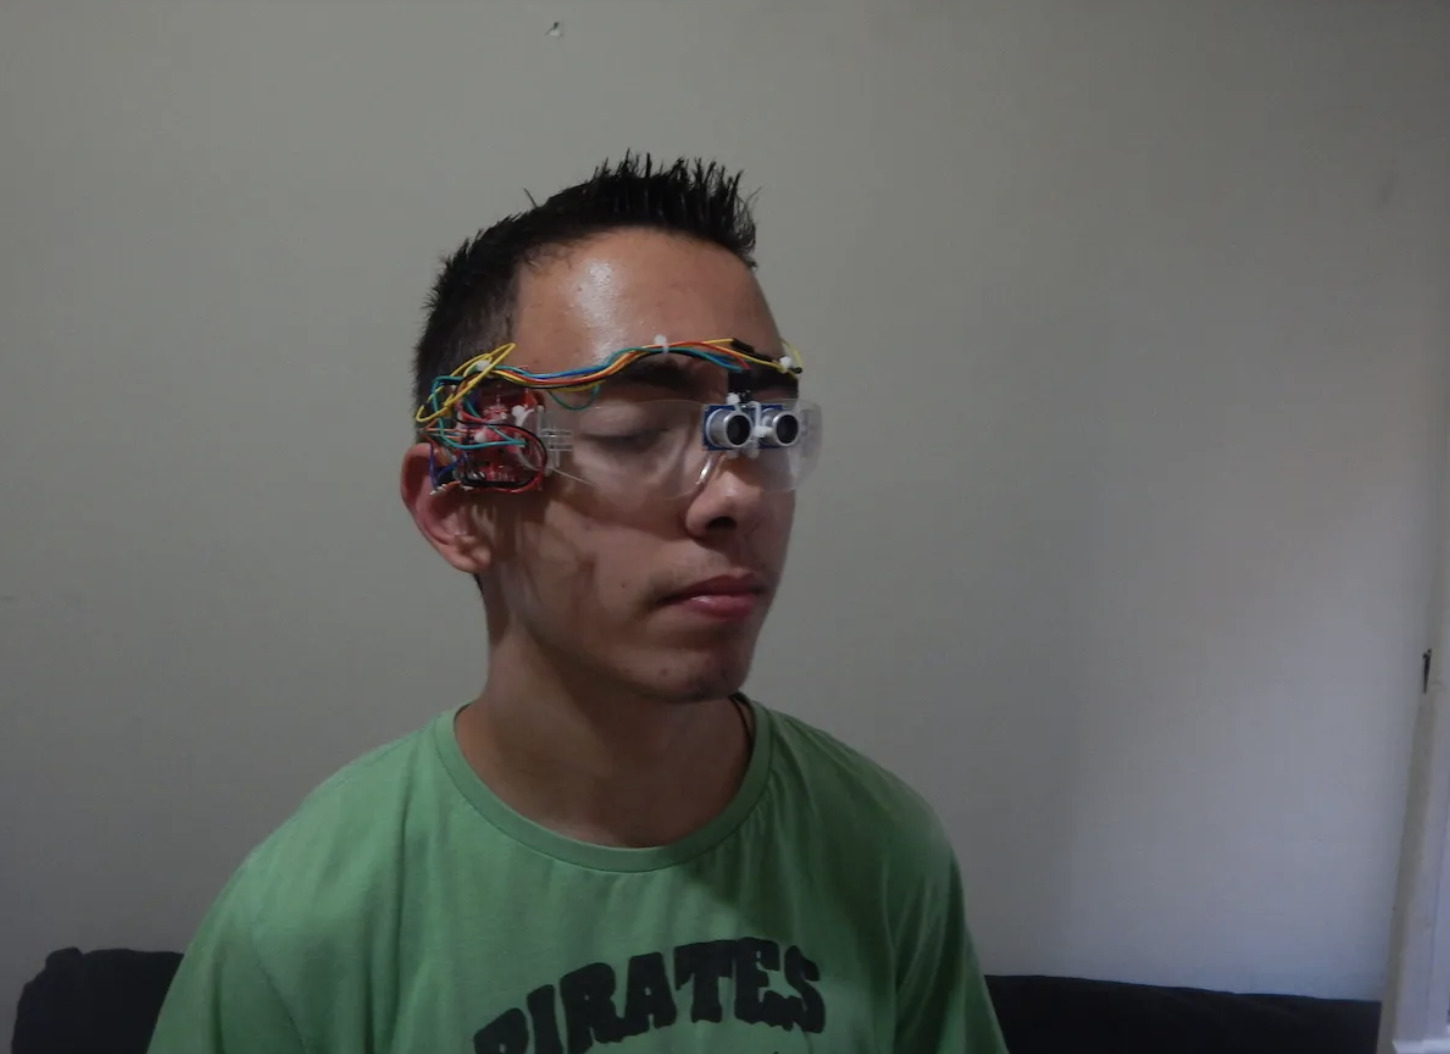 Μαθητής από την Αρτα (Άγγελος Γκέτσης) έφτιαξε ειδικά γυαλιά για τυφλούς και τον αποθεώνει η Google